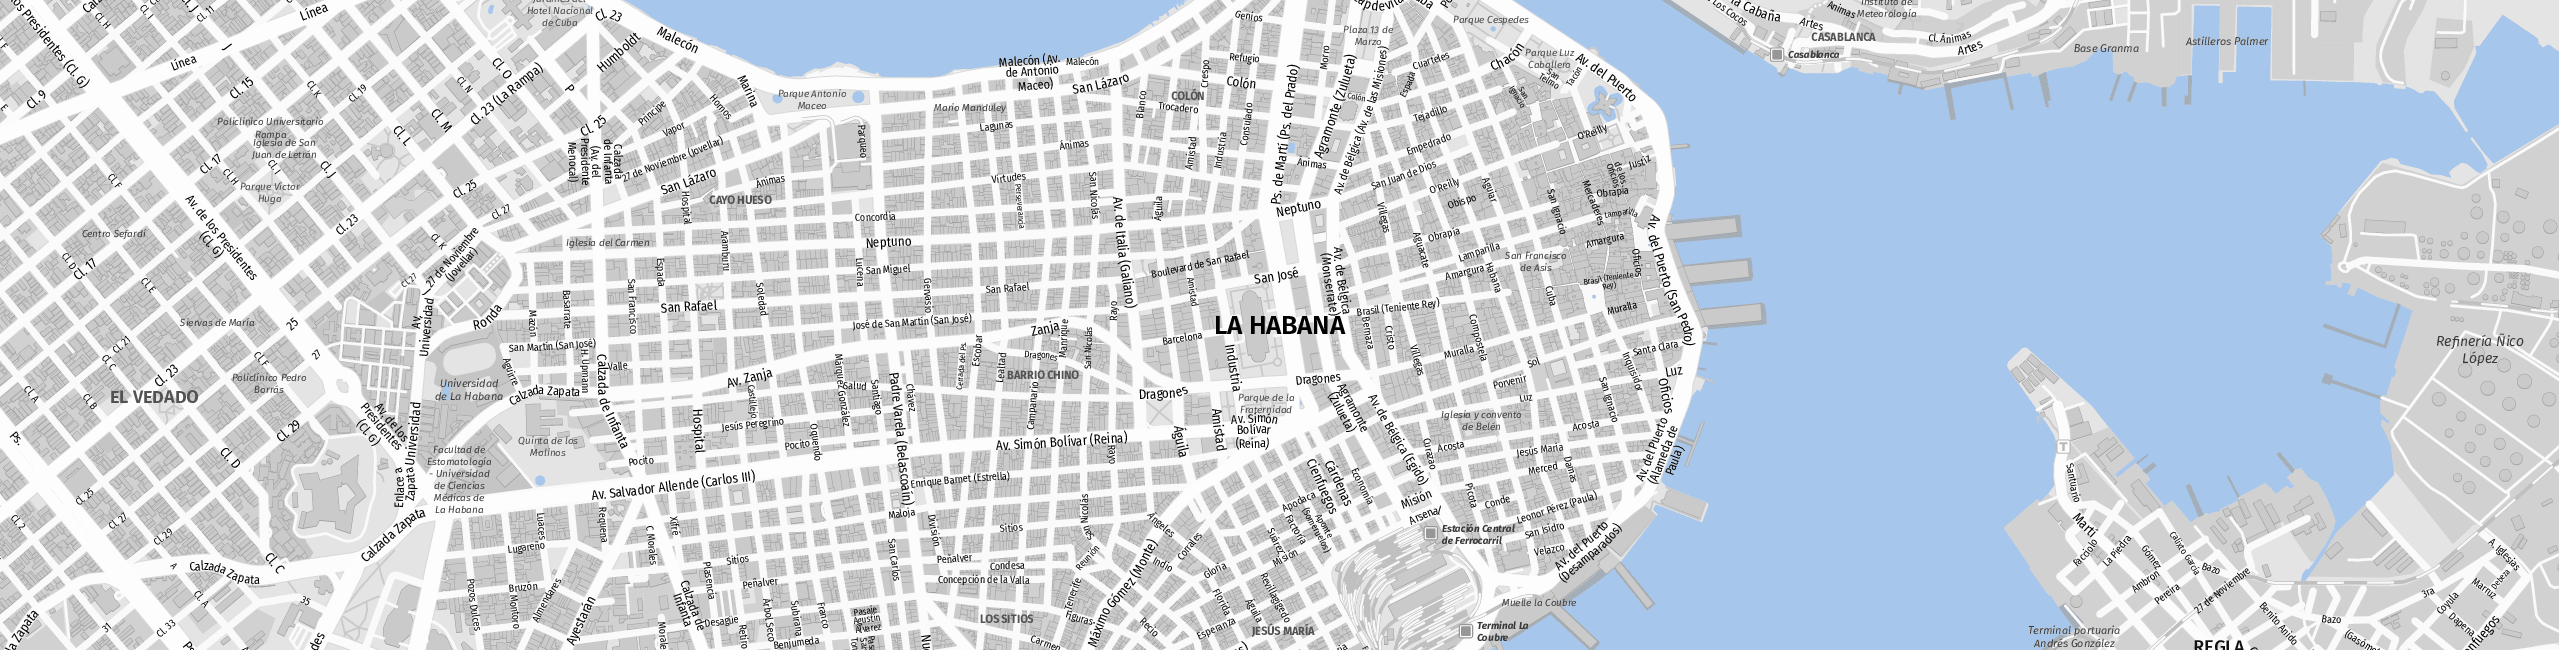 Stadtplan Ciudad de La Habana zum Downloaden.